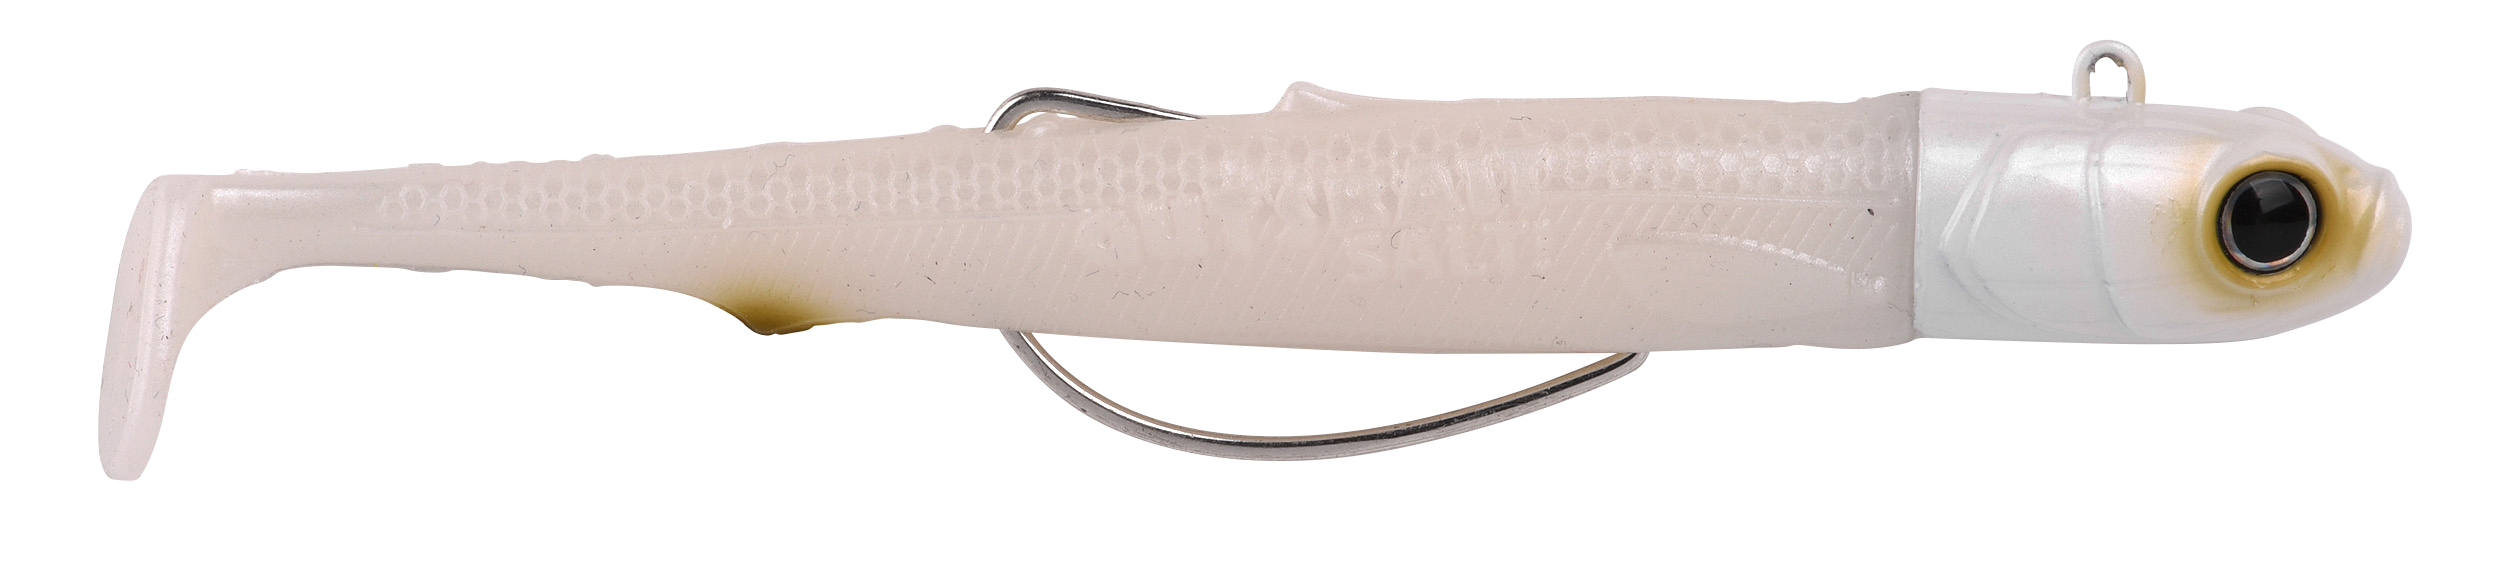 Spro Gutsbait Salt Sea Fish Softbait 8cm (15g) - White Minnow